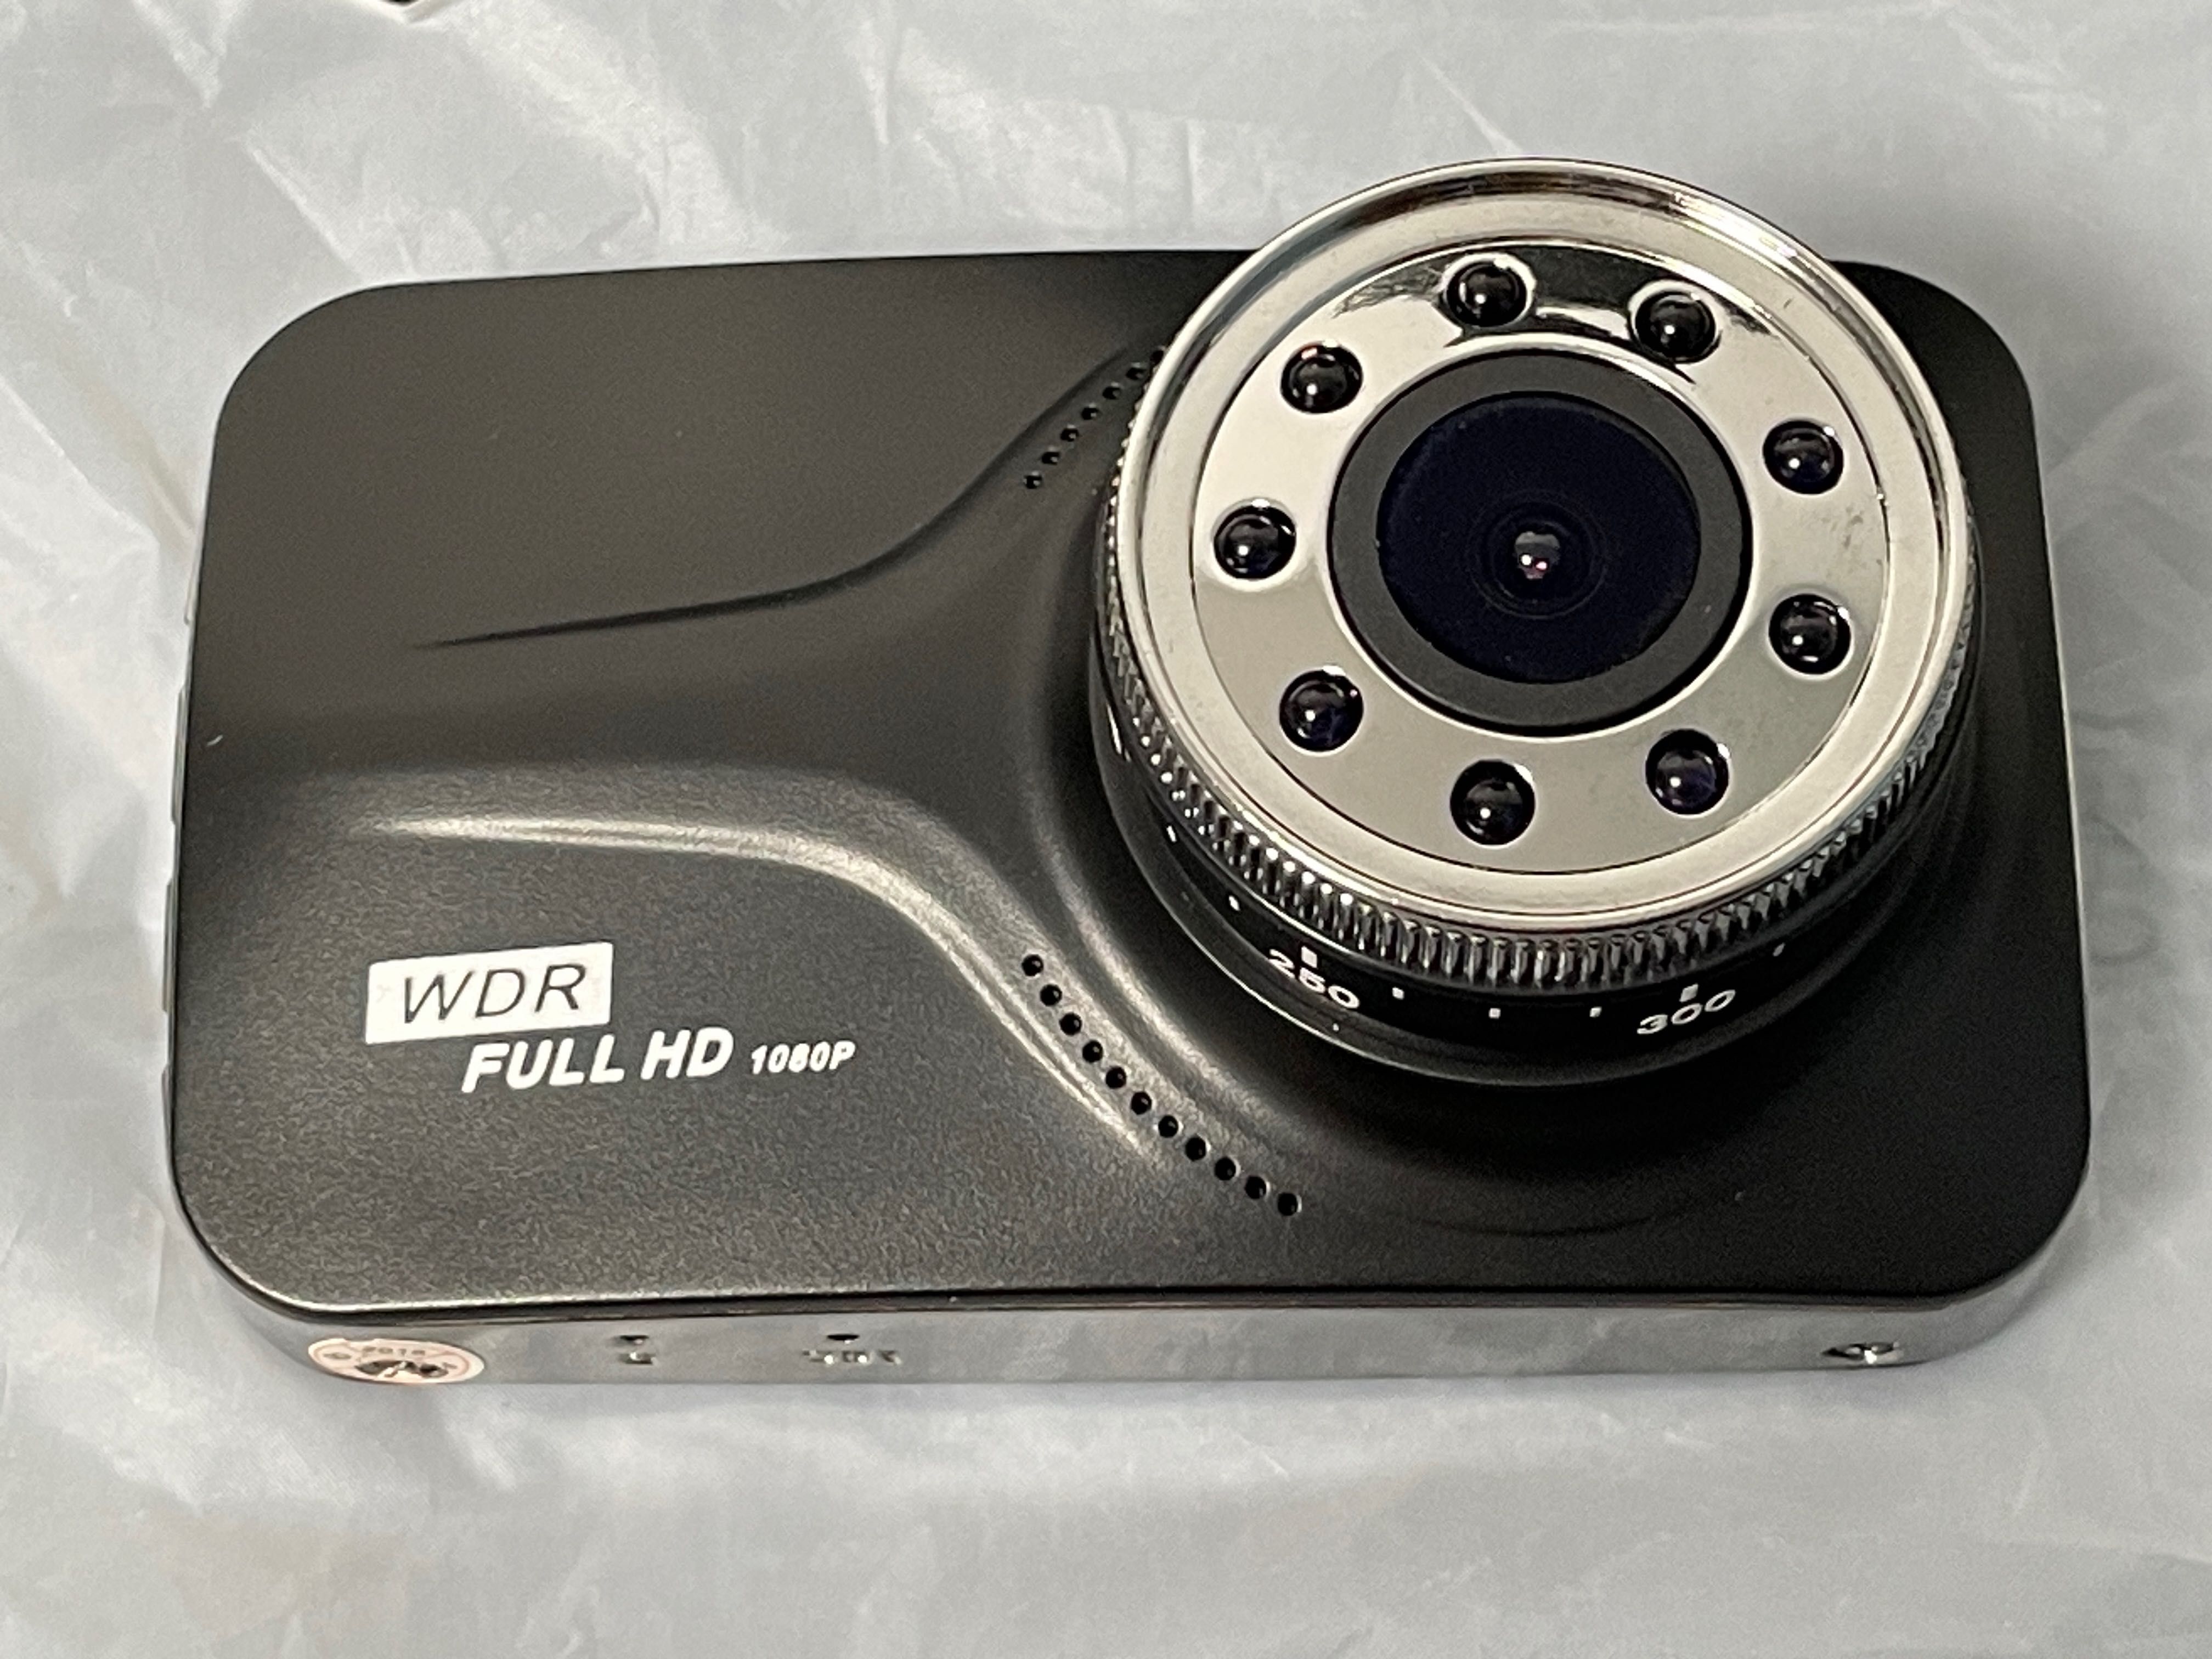 Автомобільний відеореєстратор Carcam T639